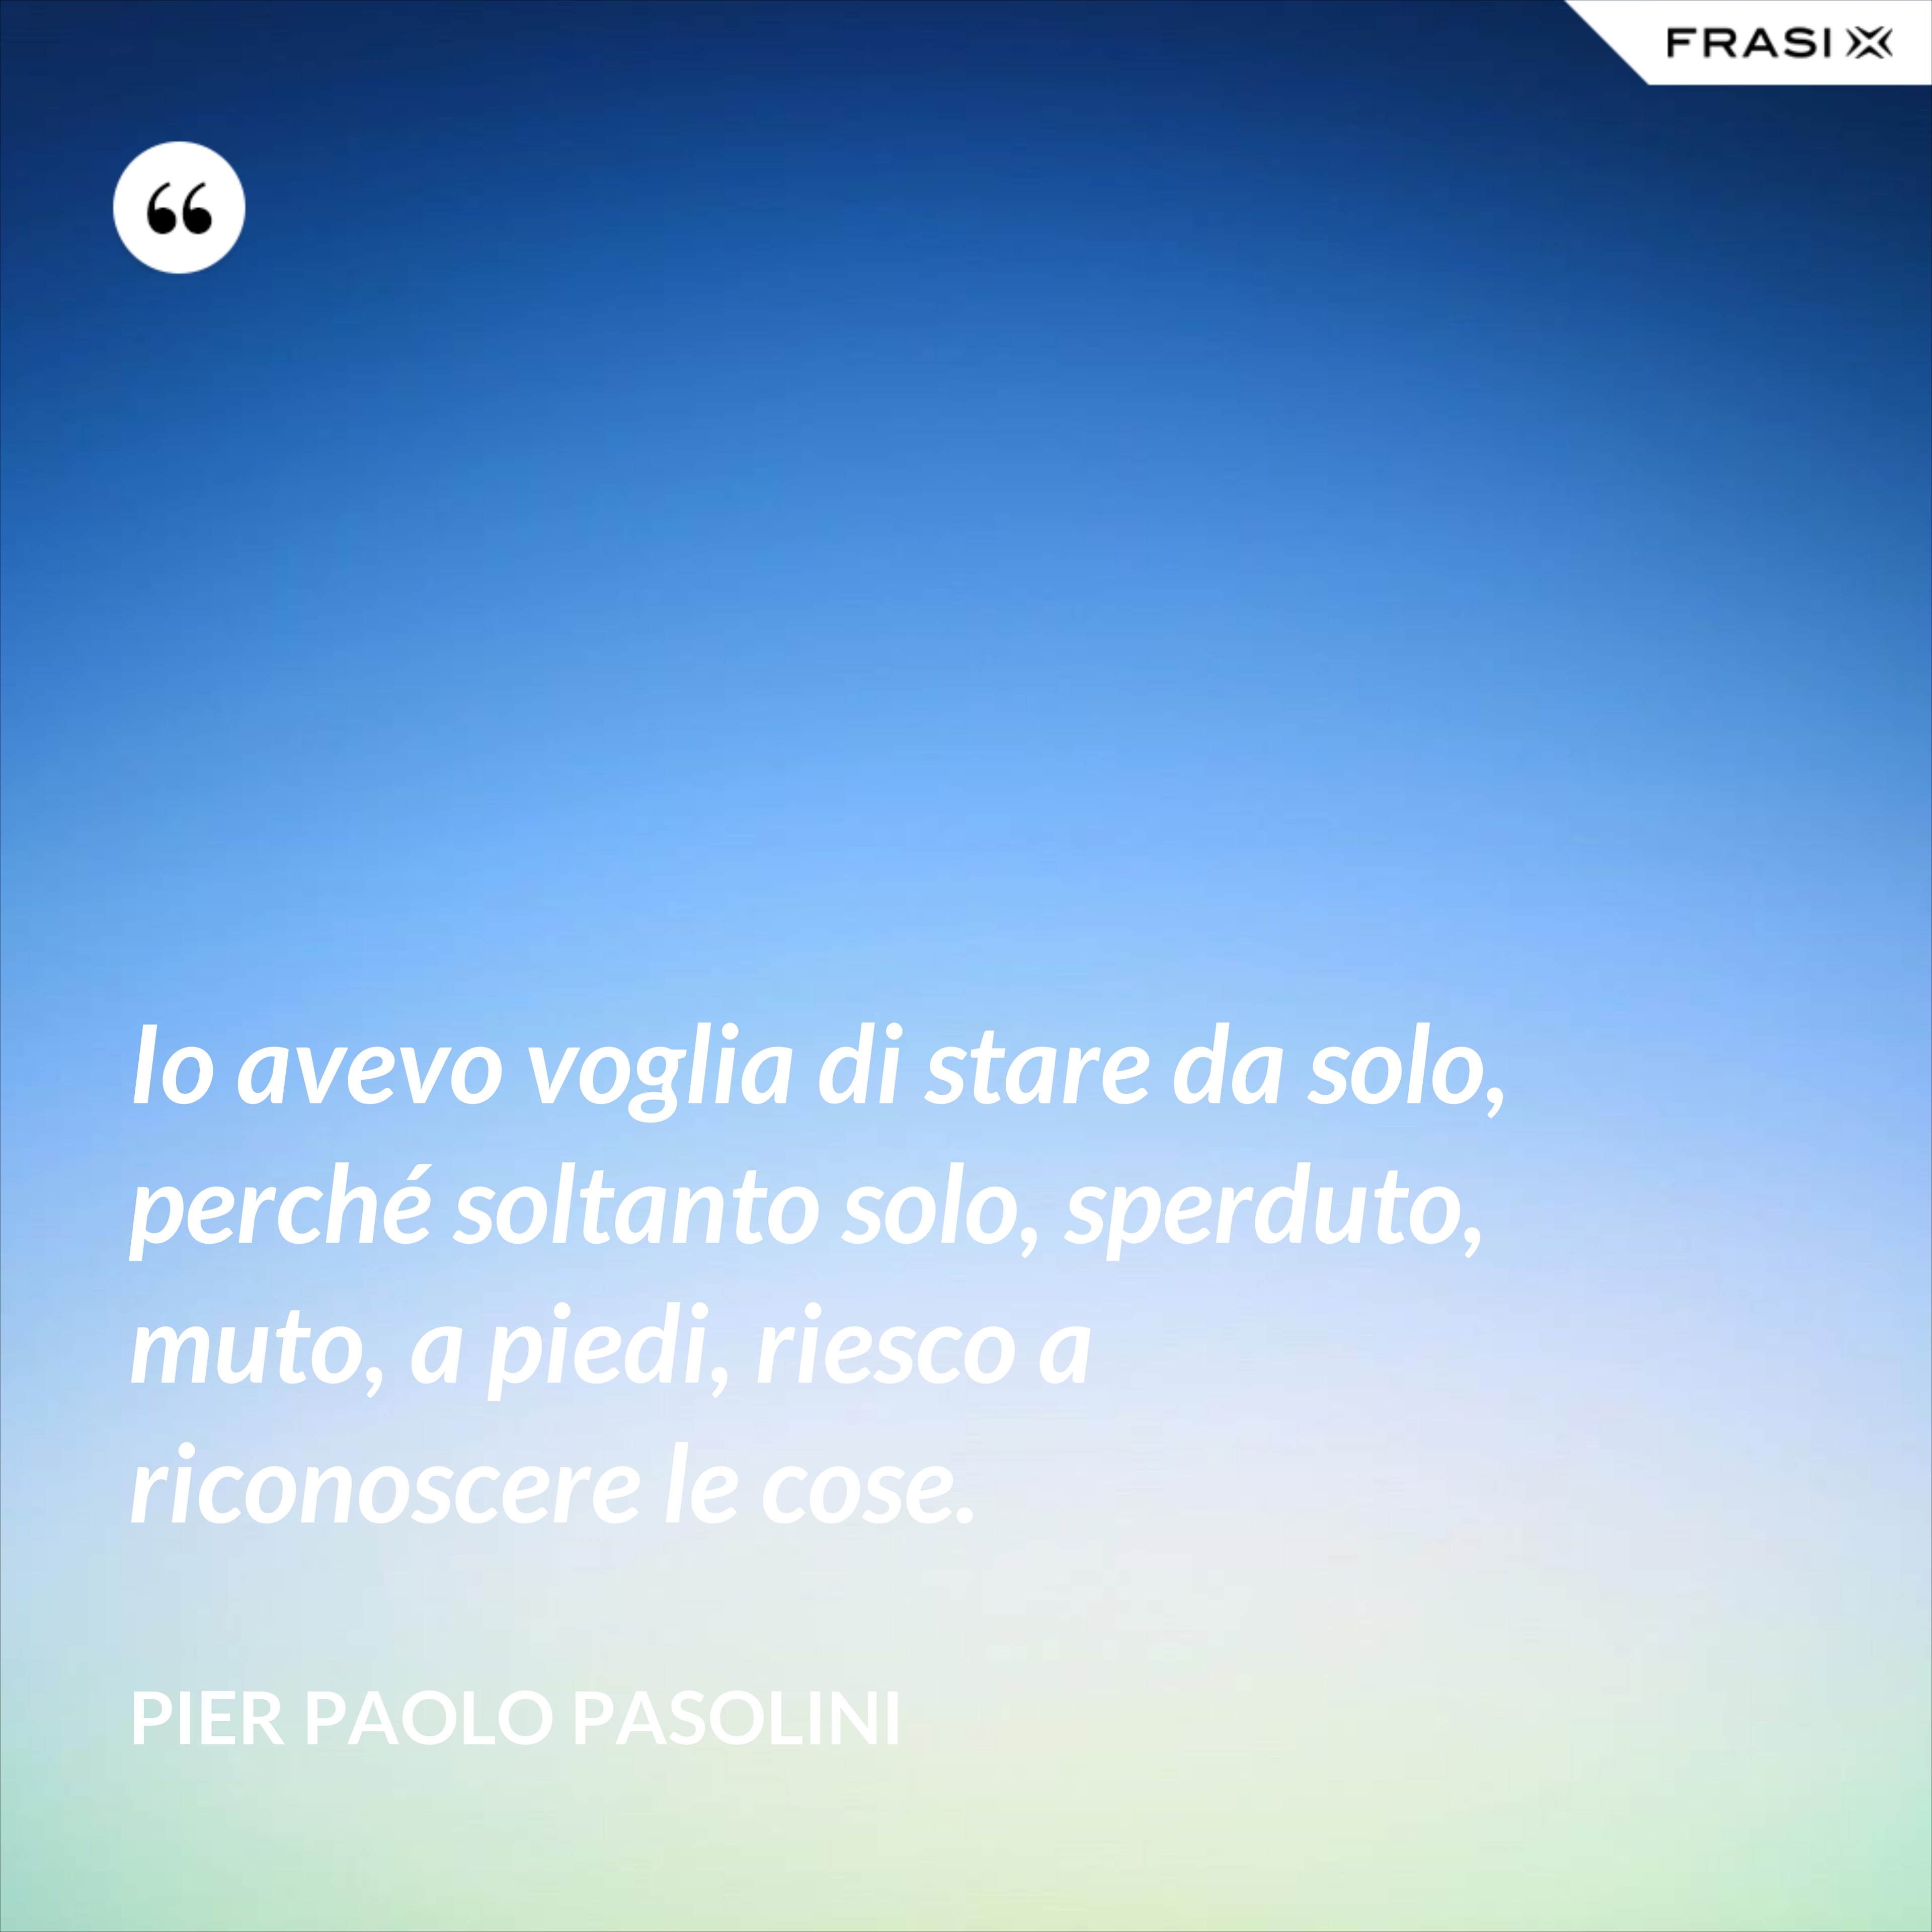 Io avevo voglia di stare da solo, perché soltanto solo, sperduto, muto, a piedi, riesco a riconoscere le cose. - Pier Paolo Pasolini